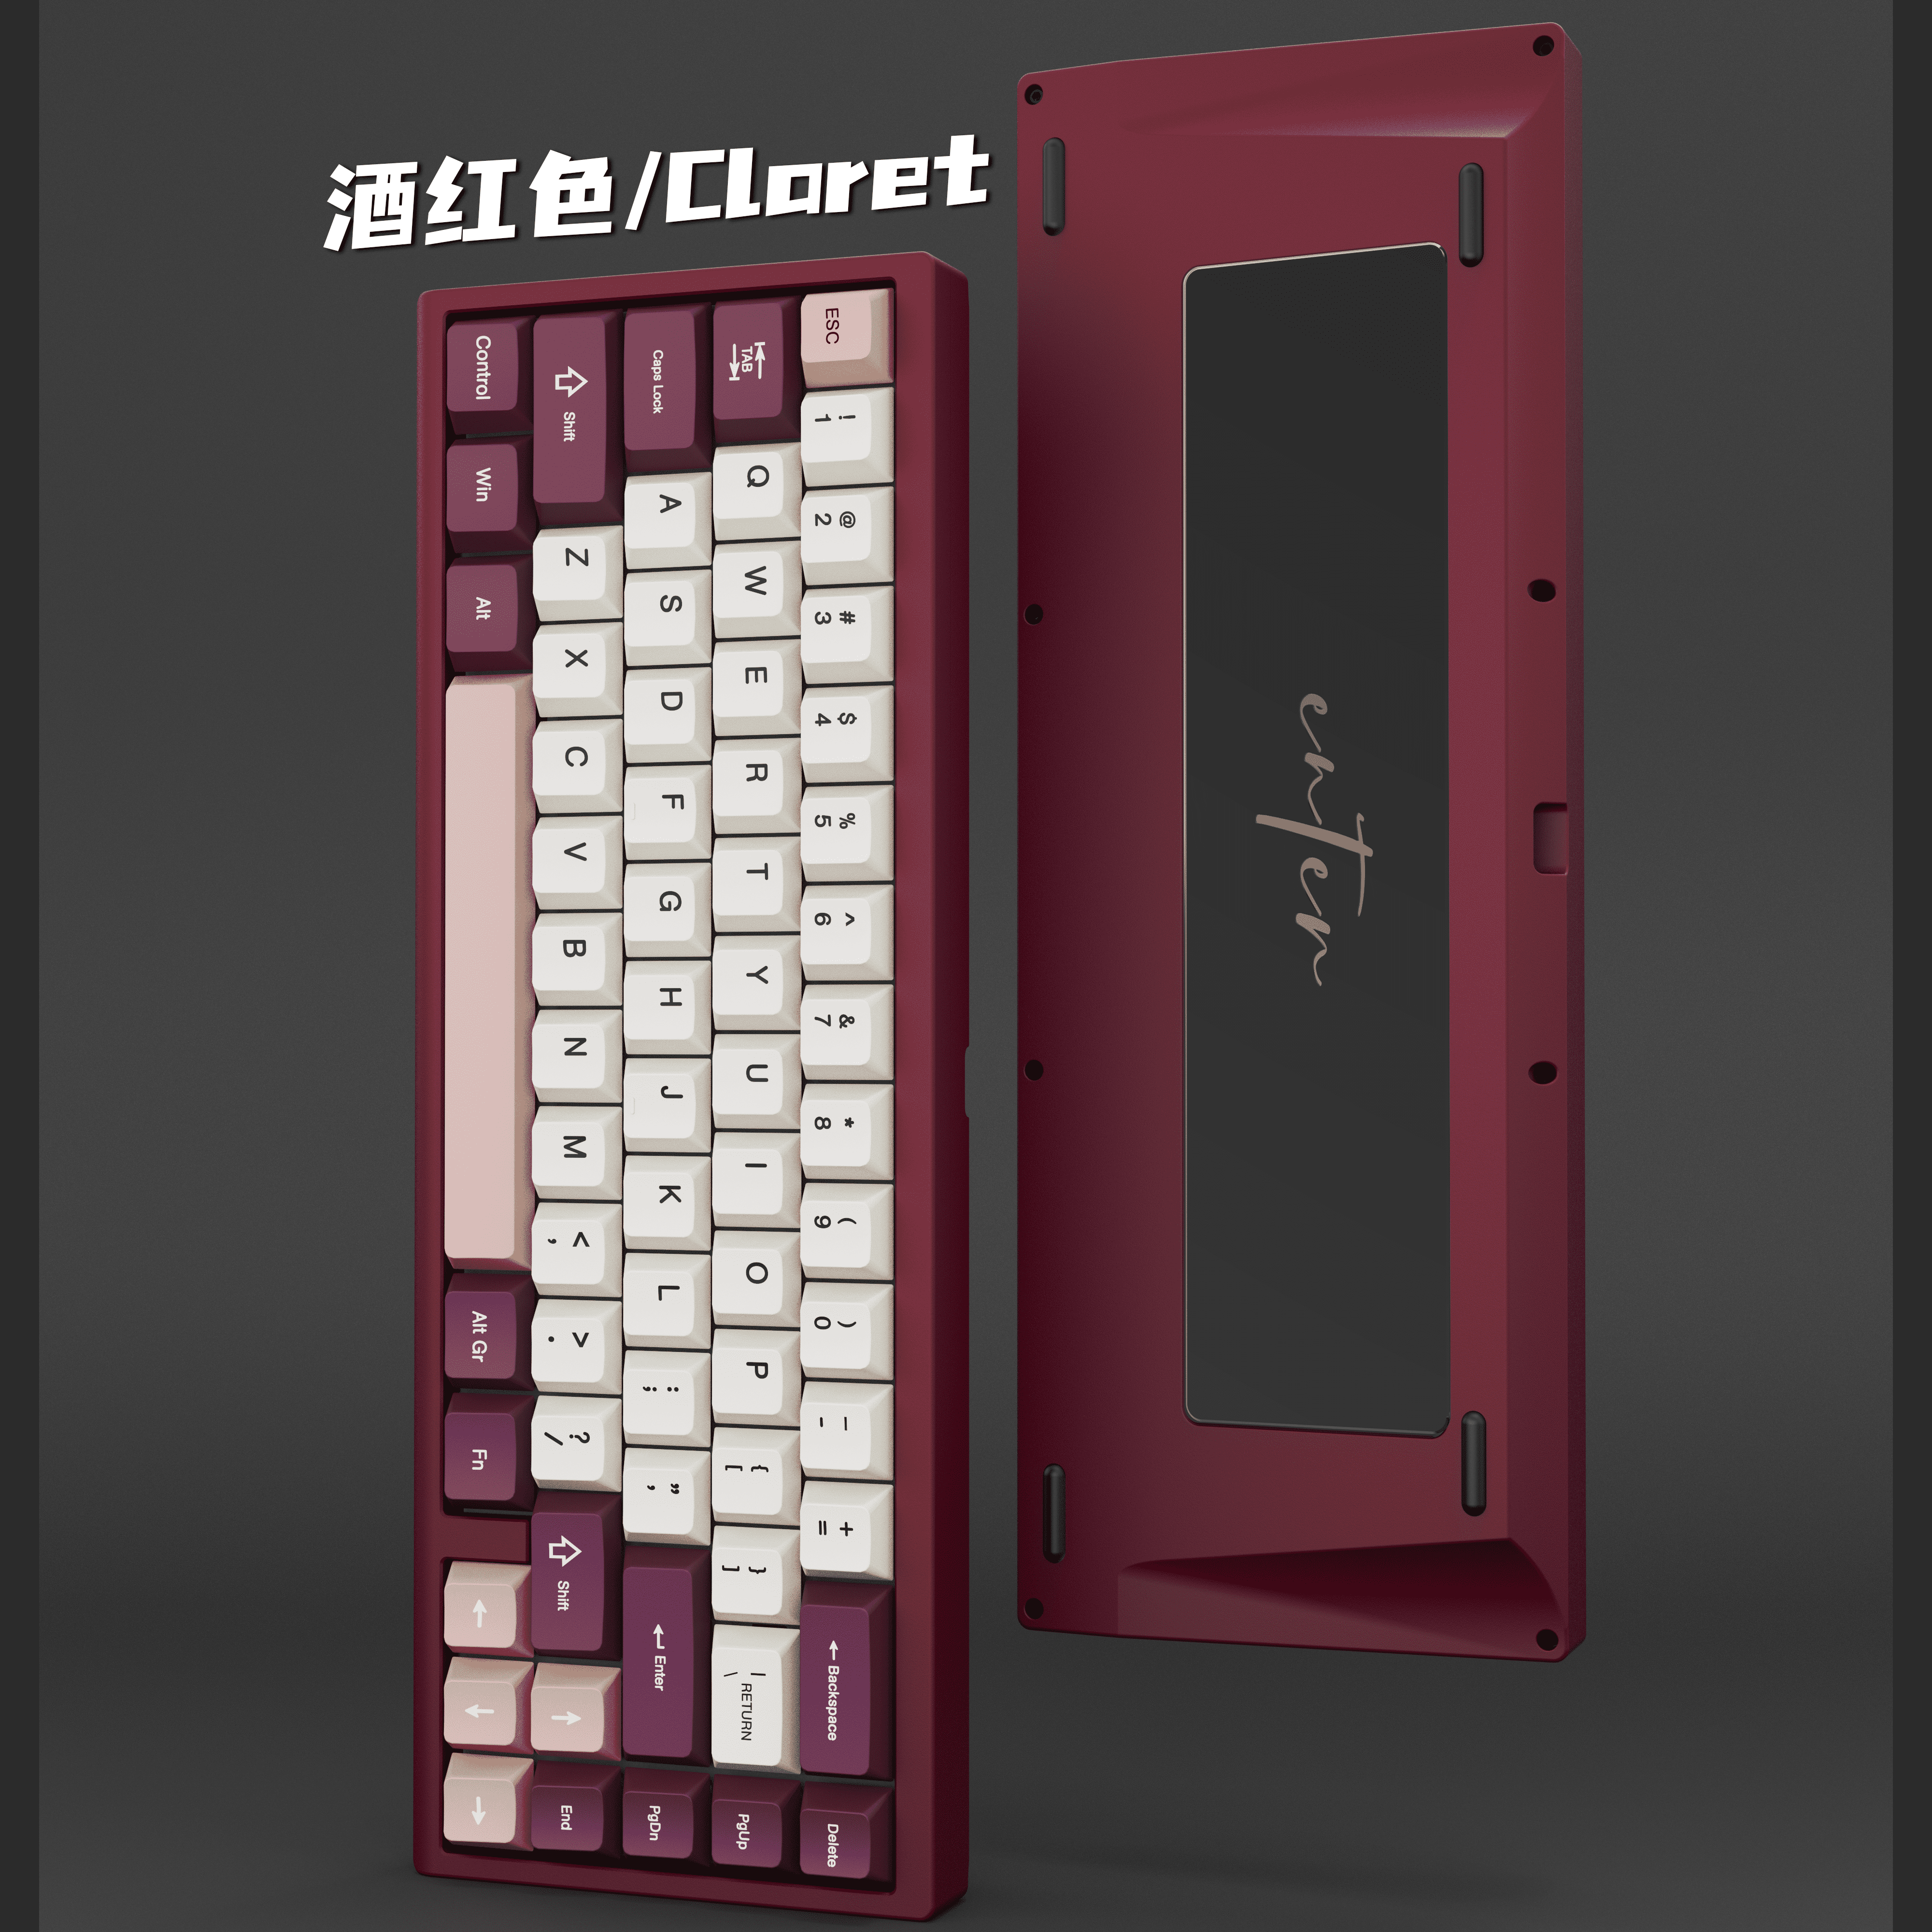 Enter67 v2 Keyboard Kit